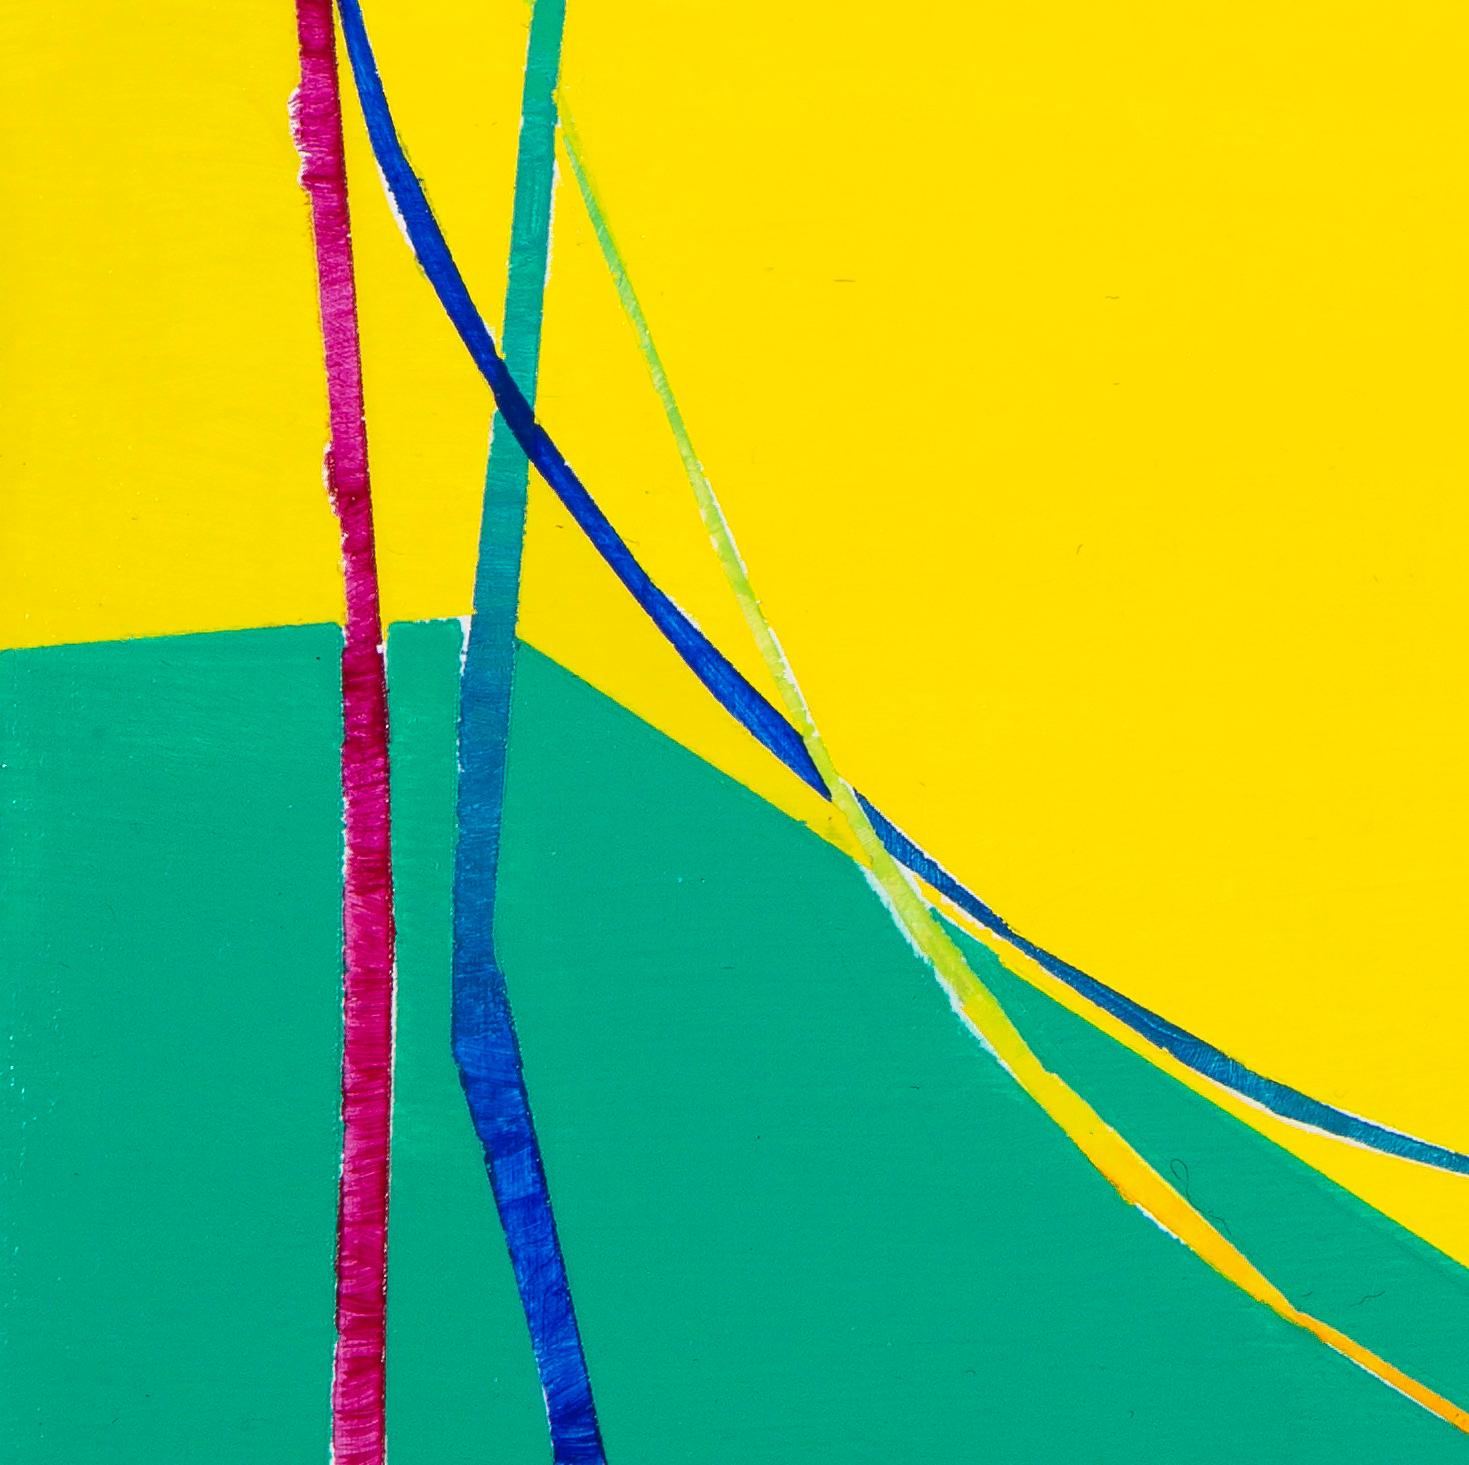 Paula Cahills lineare, abstrakte Kompositionen bestehen oft aus einer einzigen, leuchtenden Linie, die sich schlängelt, die Farbe wechselt und sich nahtlos wieder mit sich selbst verbindet. Dieses Stück kombiniert Cahills charakteristische